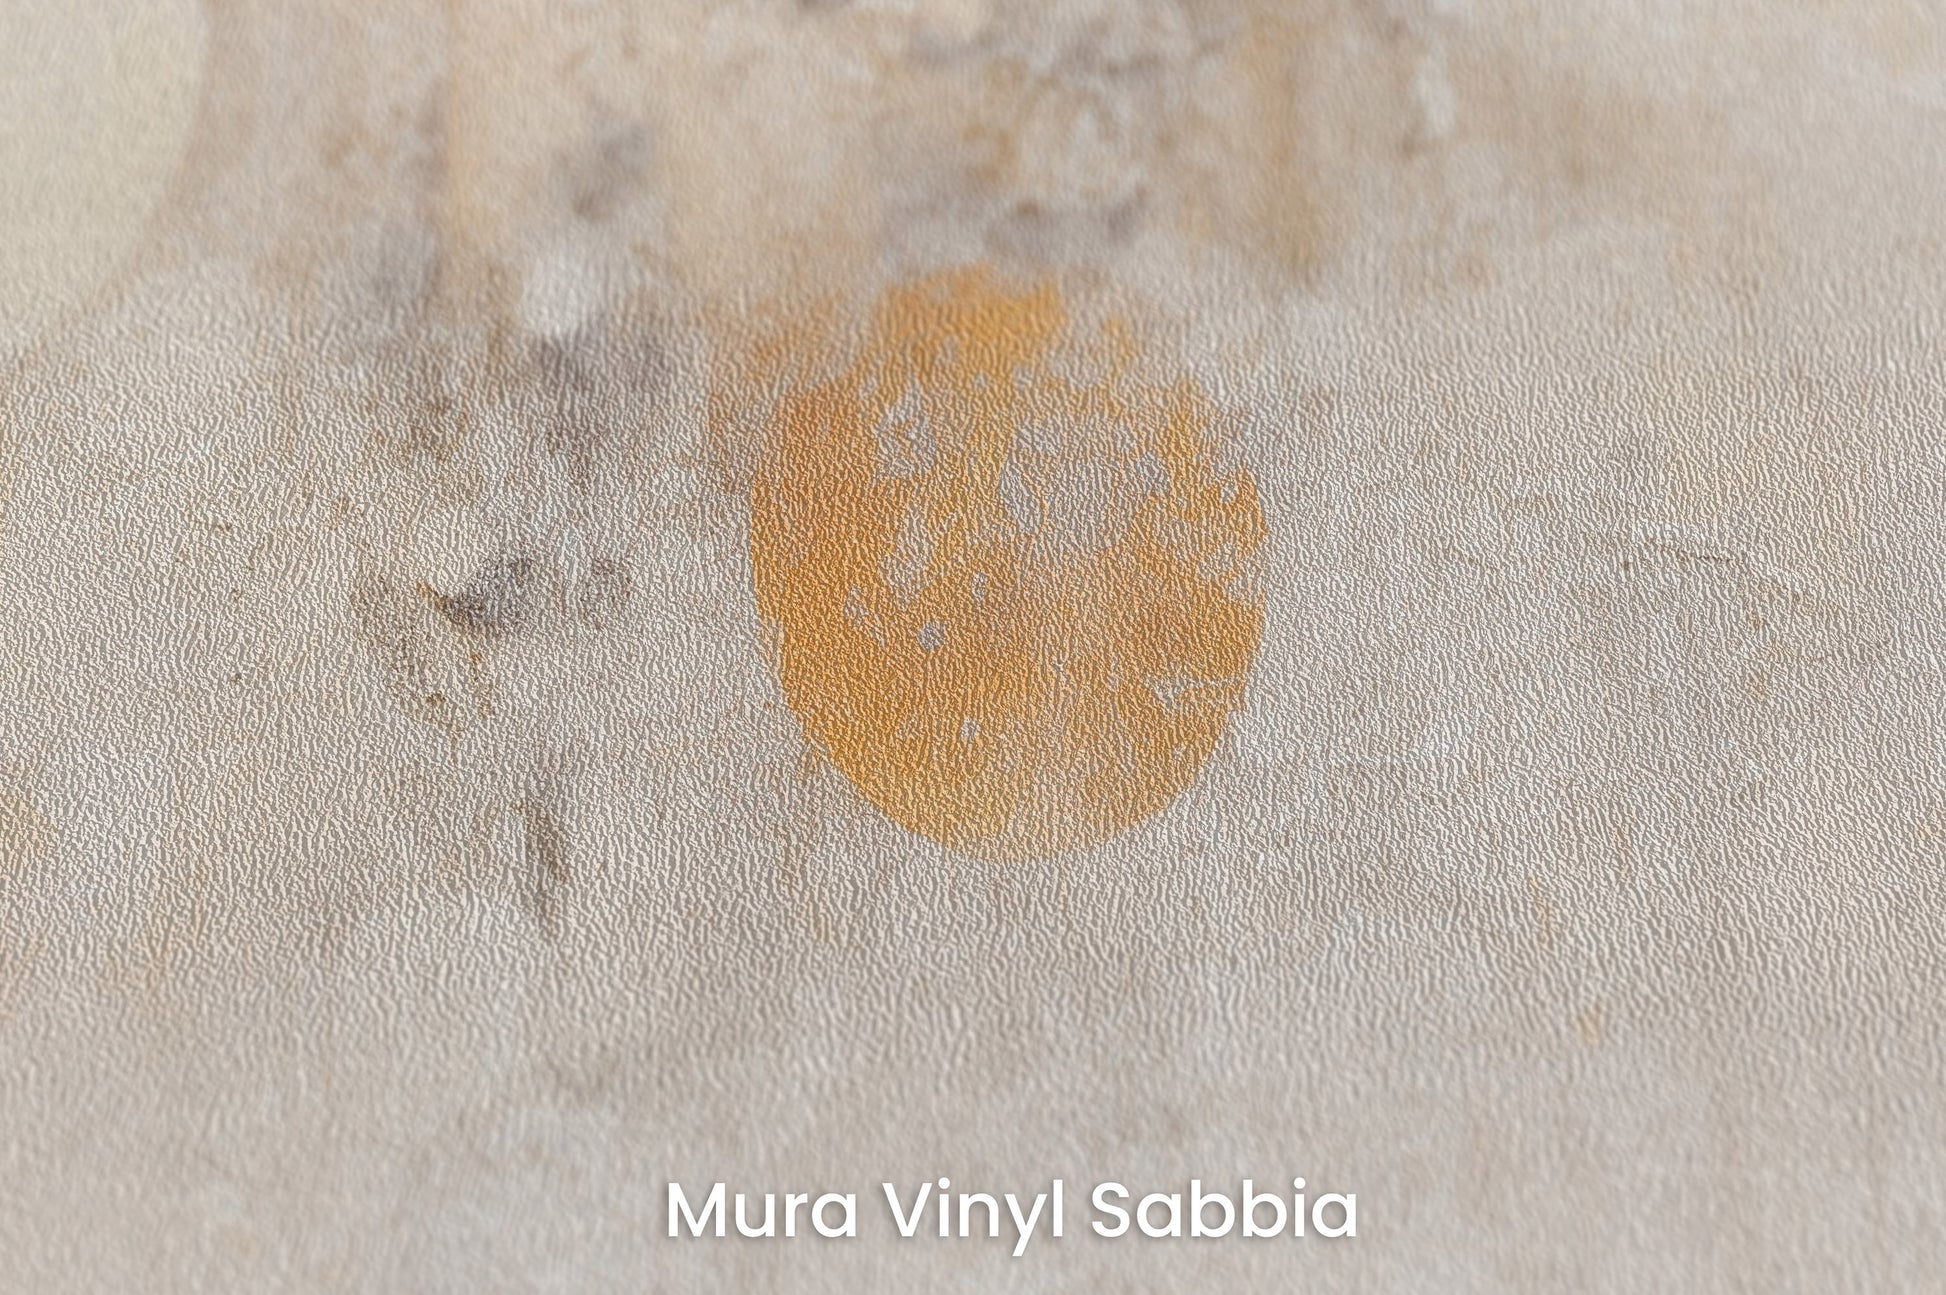 Zbliżenie na artystyczną fototapetę o nazwie ORBITAL WHISPER CANVAS na podłożu Mura Vinyl Sabbia struktura grubego ziarna piasku.